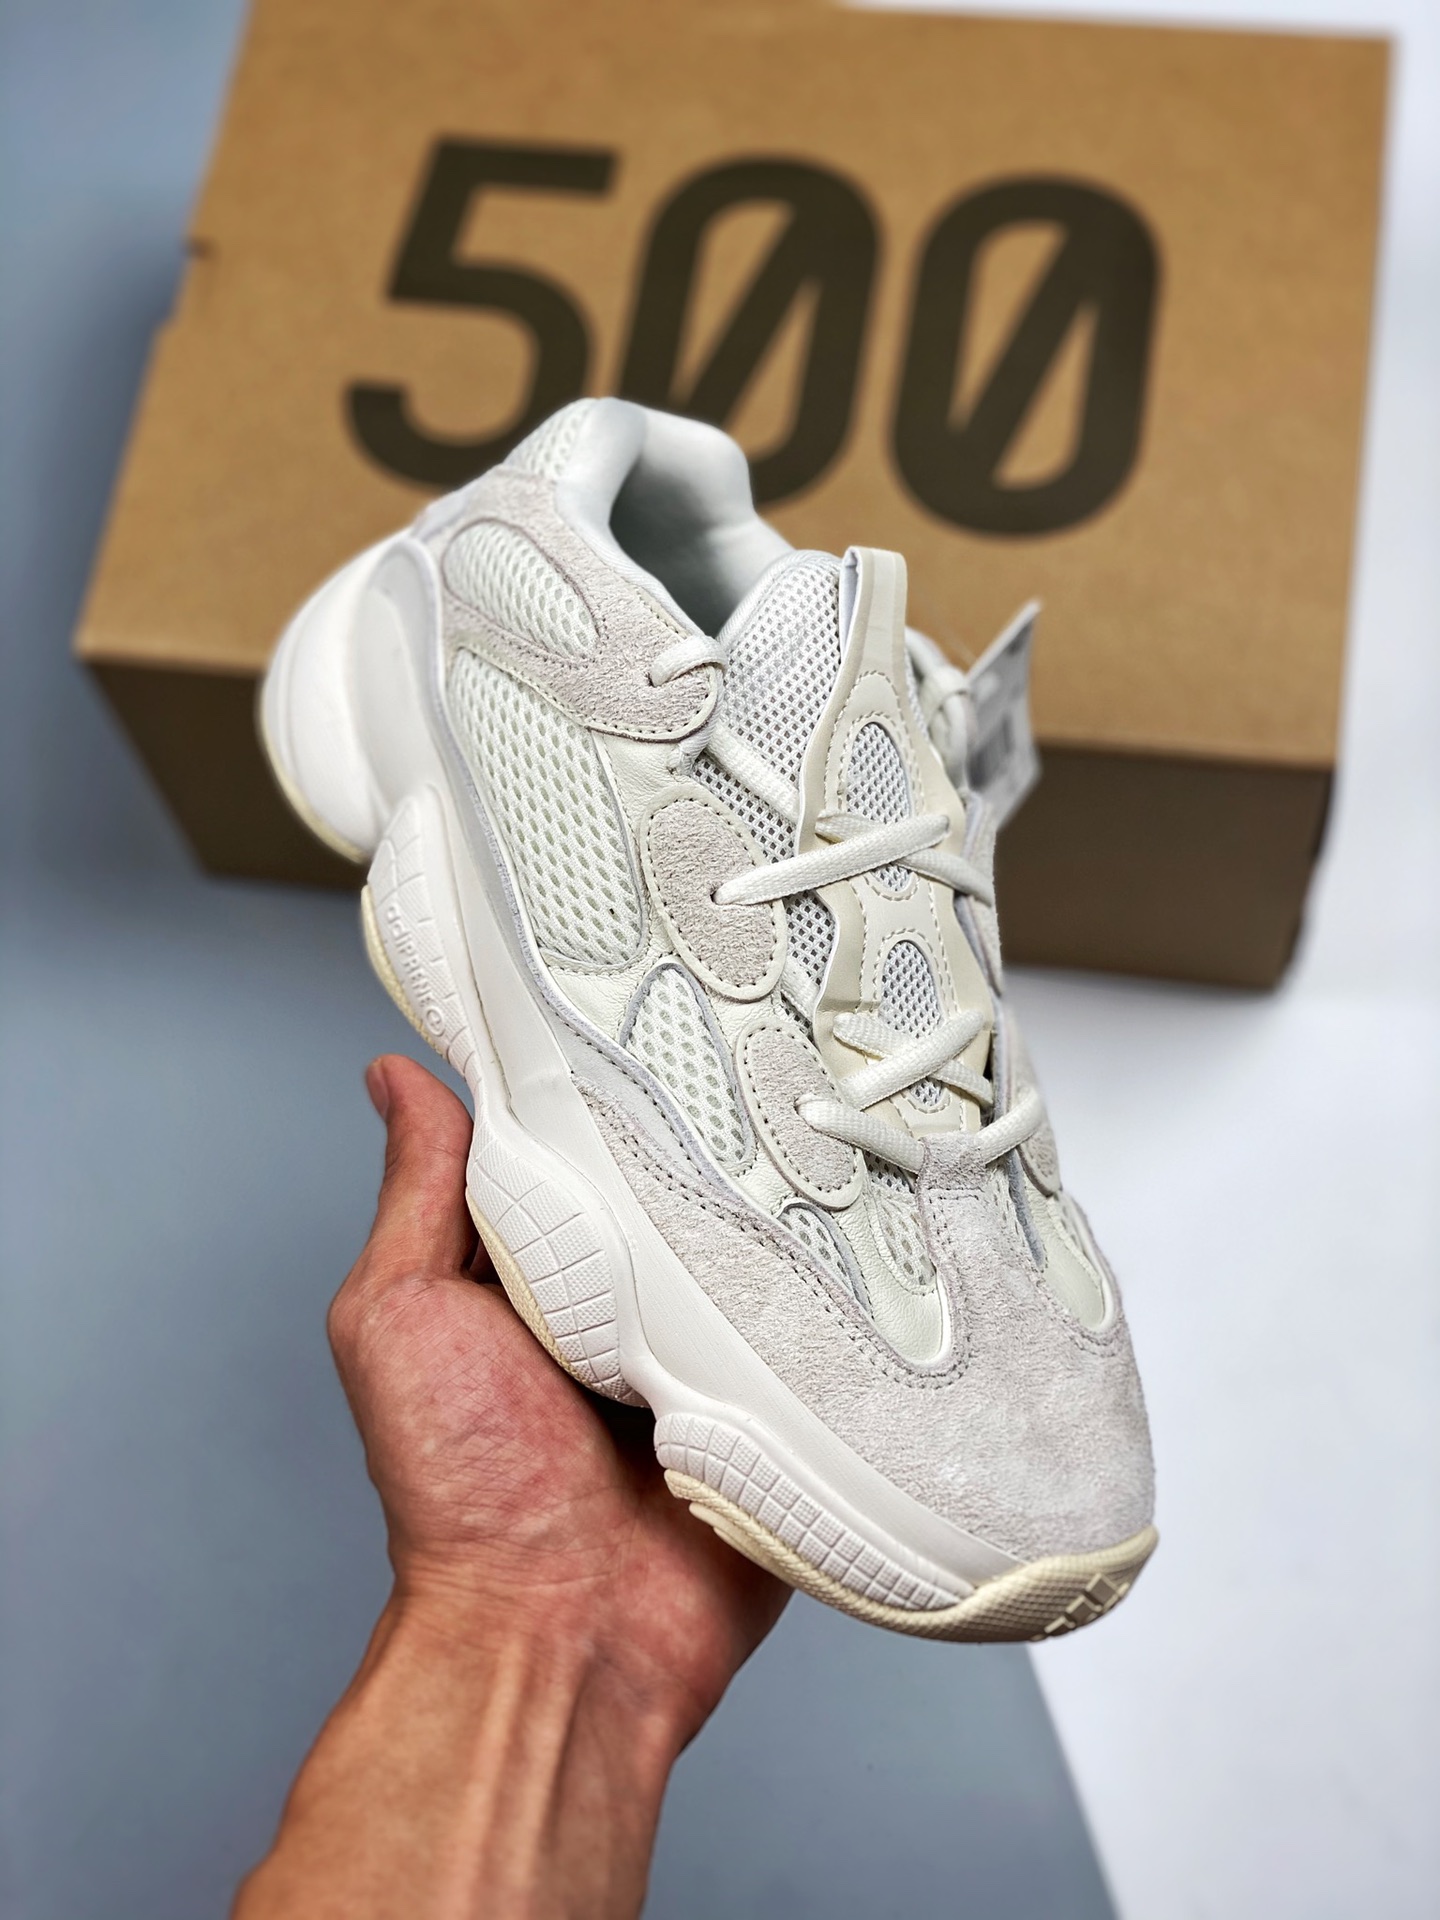 adidas Yeezy 500 "Bone White" FV3573 Shoes